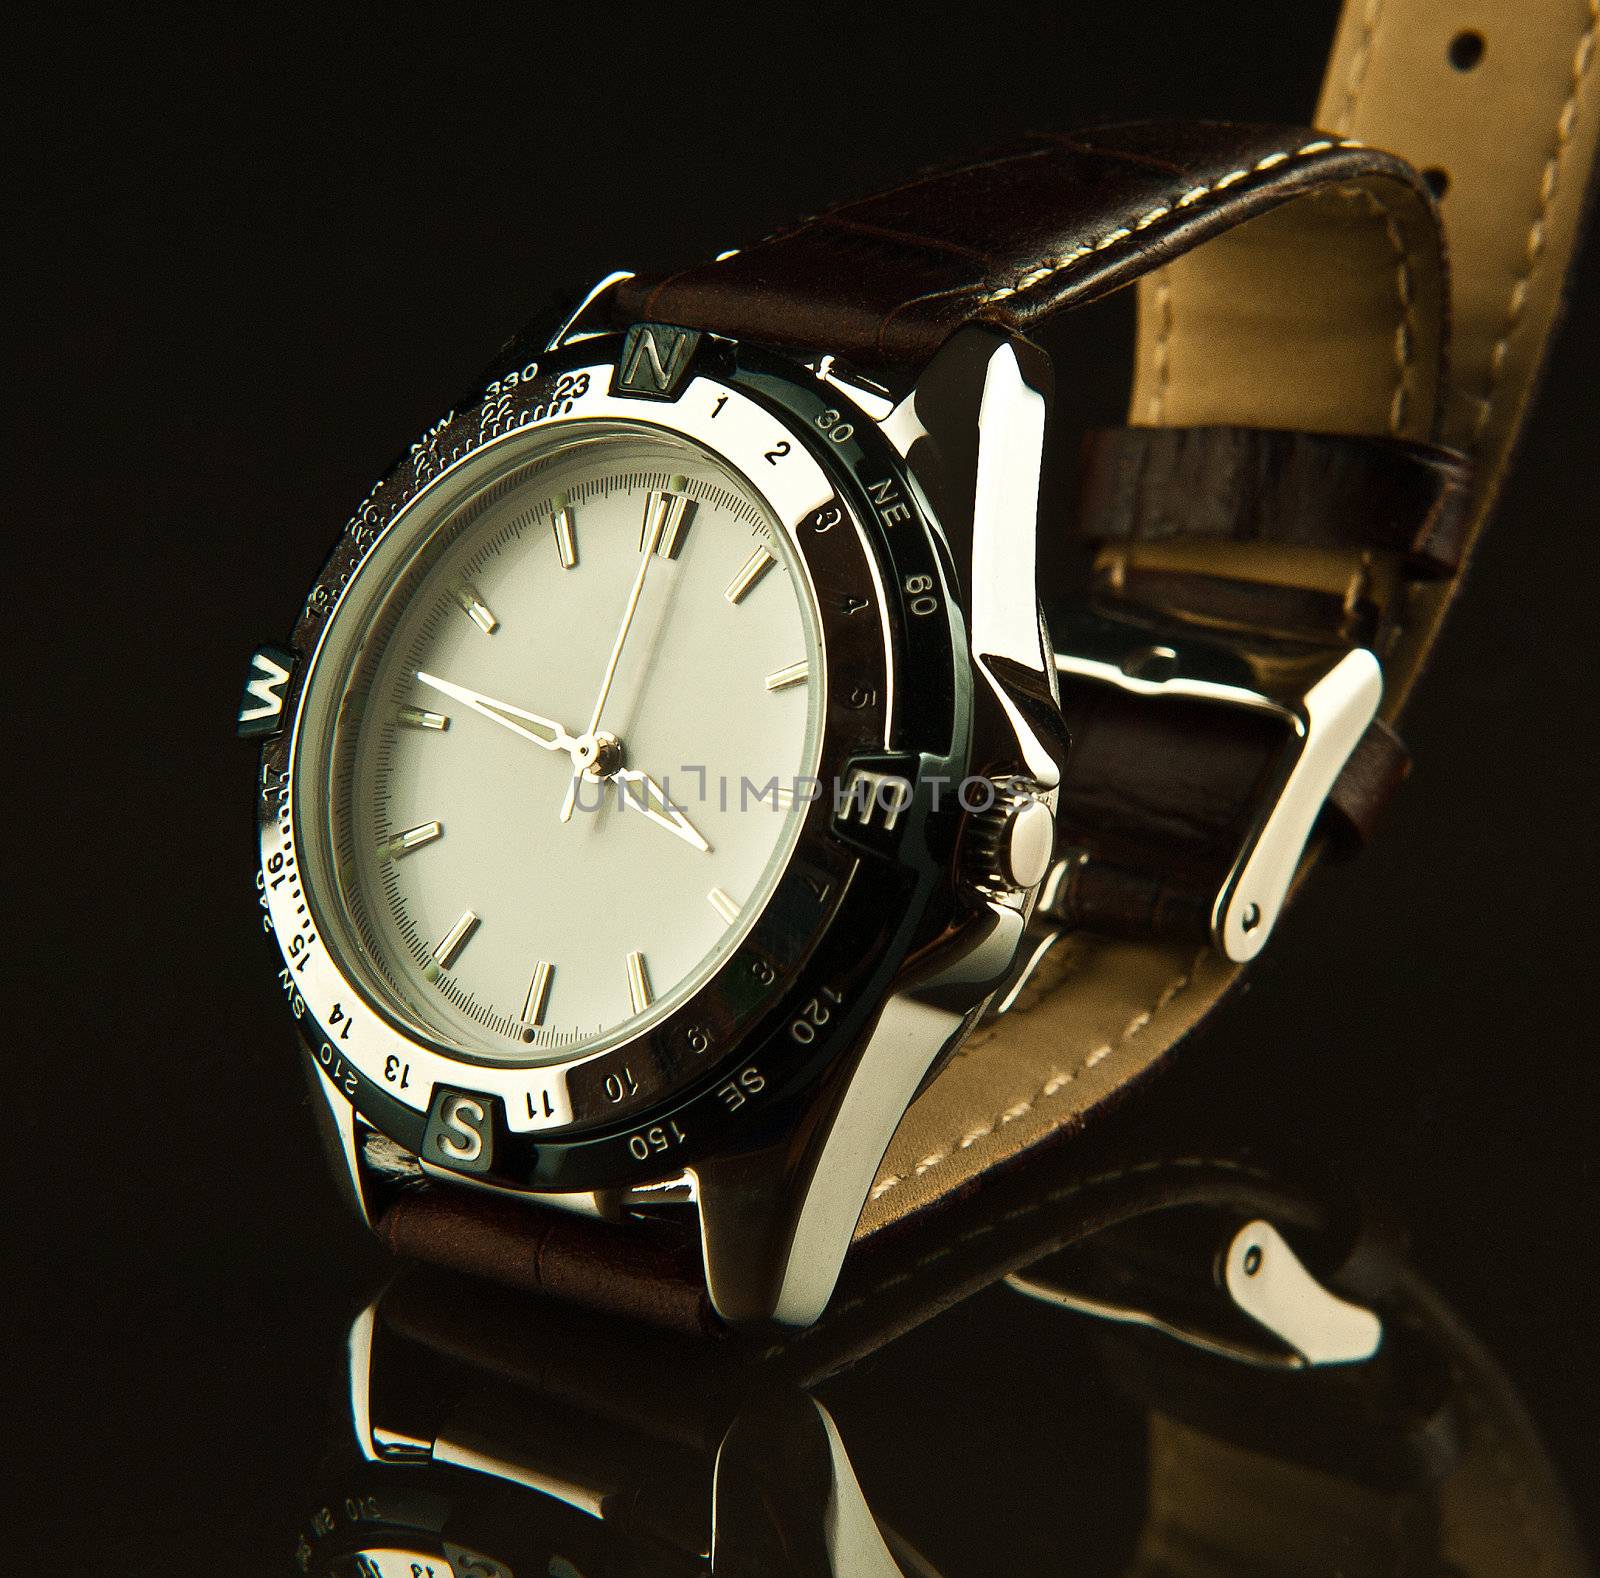 Wristwatch by avix